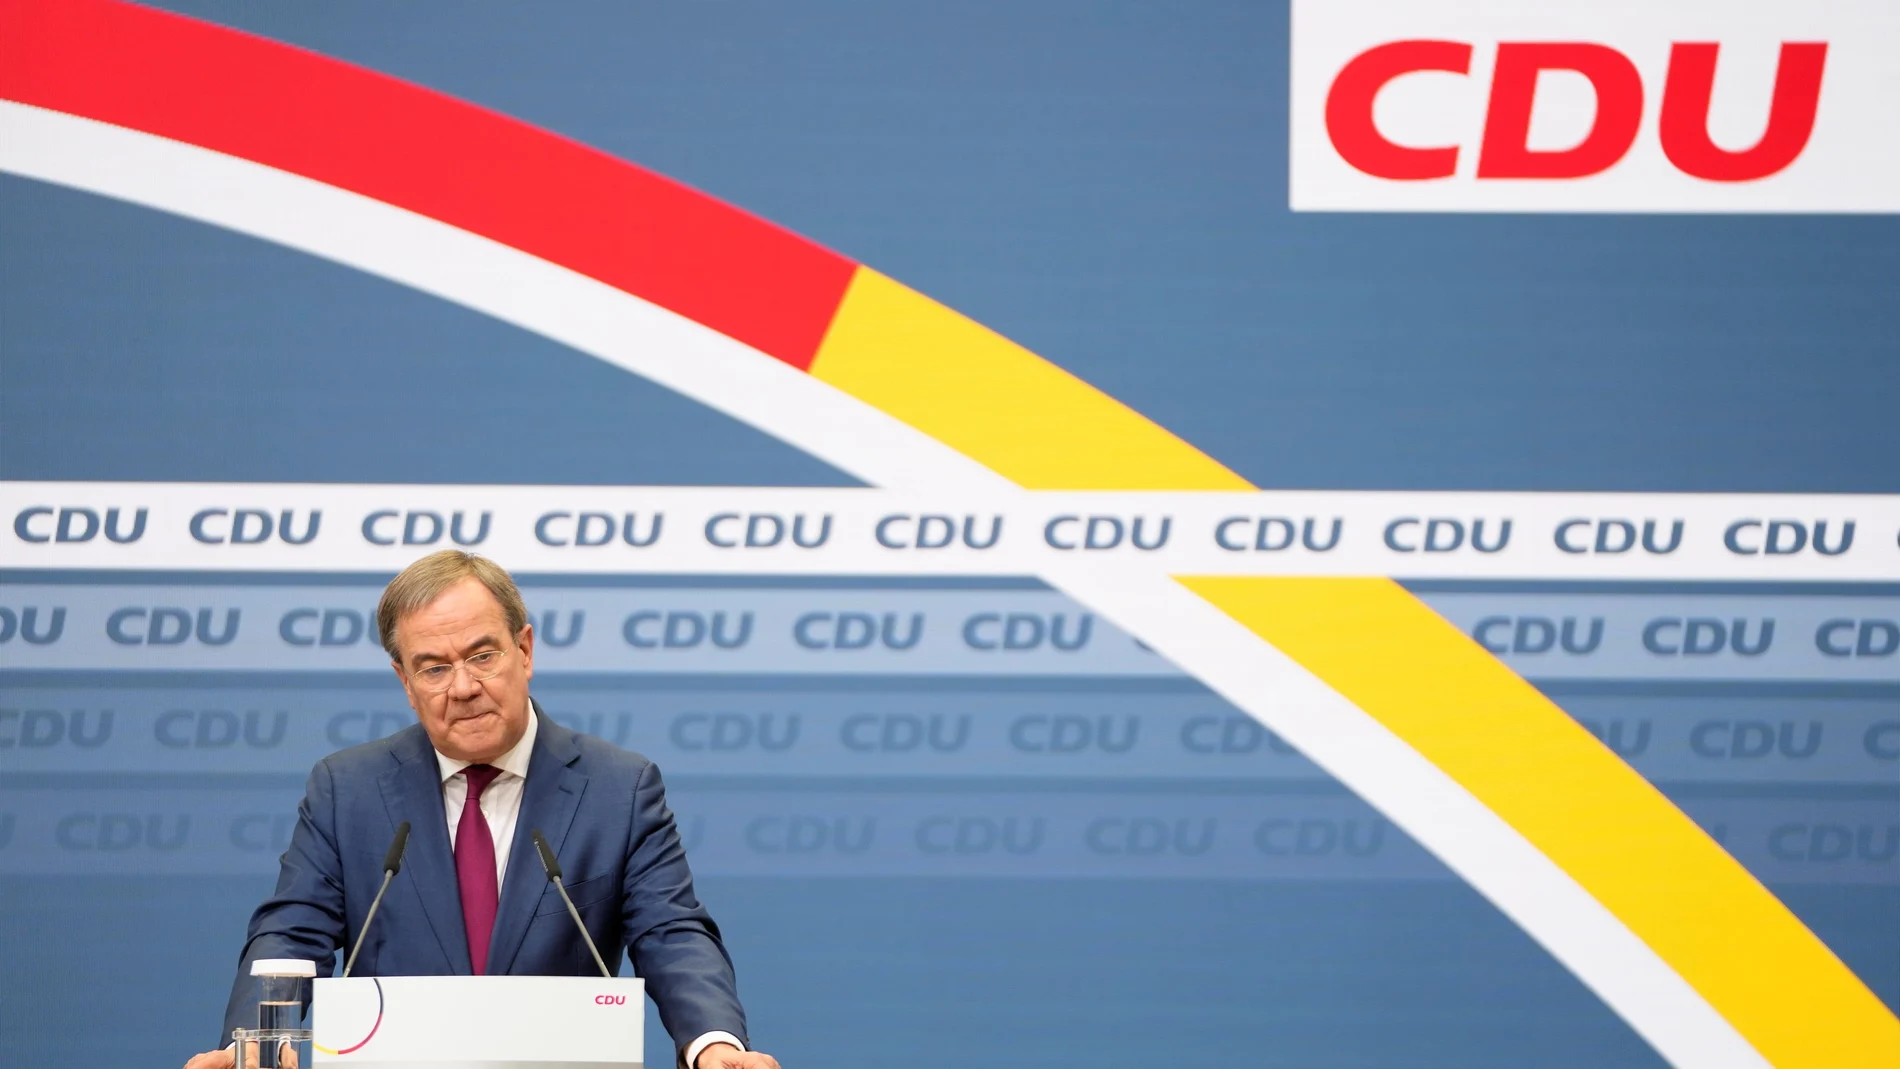 La histórica derrota electoral de la CDU en septiembre ha obligado a su candidato y líder, Armin Laschet, a abrir el proceso de sucesión